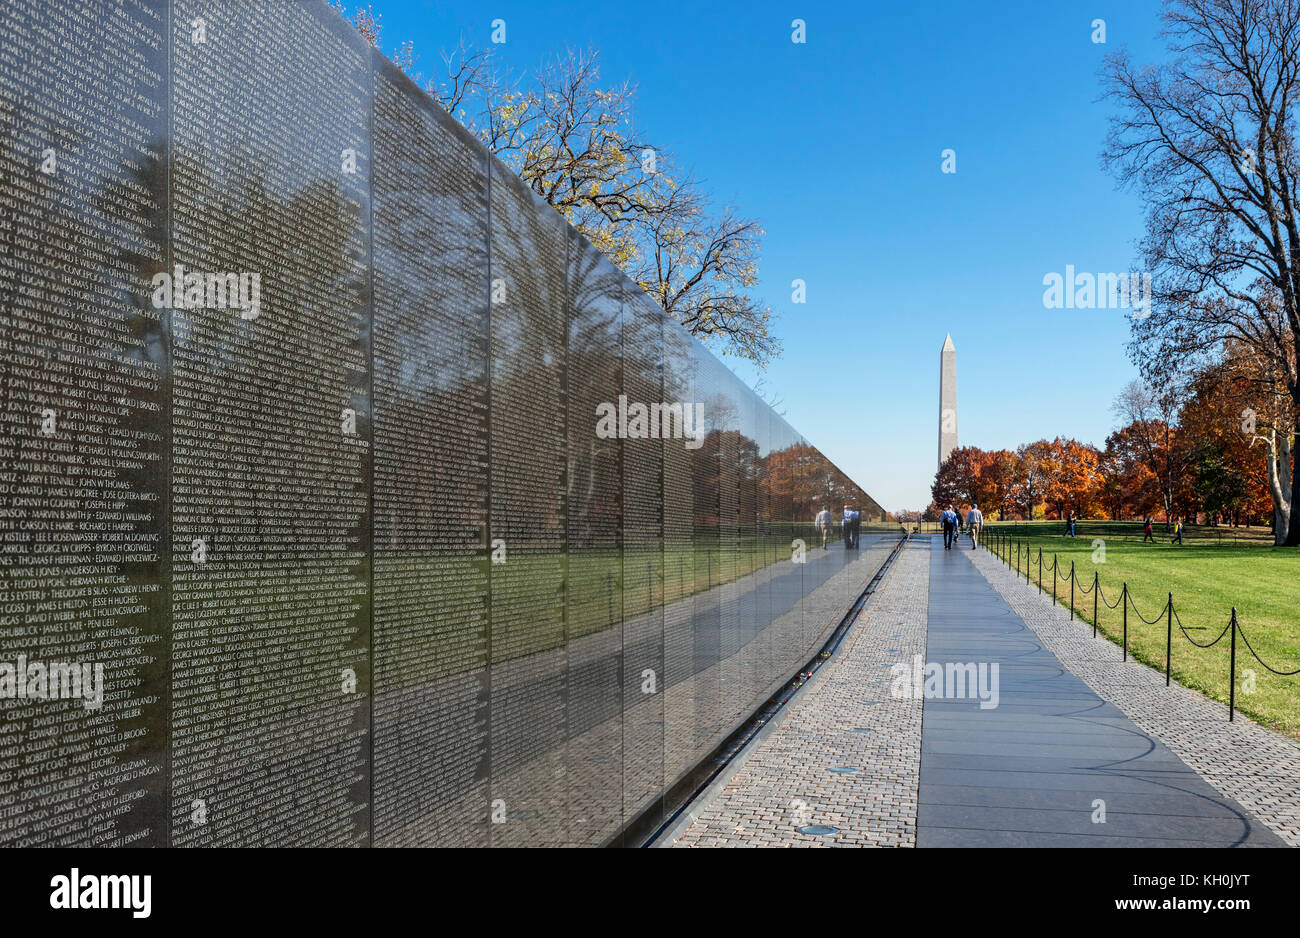 El muro conmemorativo en el Monumento a los veteranos de Vietnam con el Monumento a Washington en la distancia, en Washington DC, EE.UU. Foto de stock